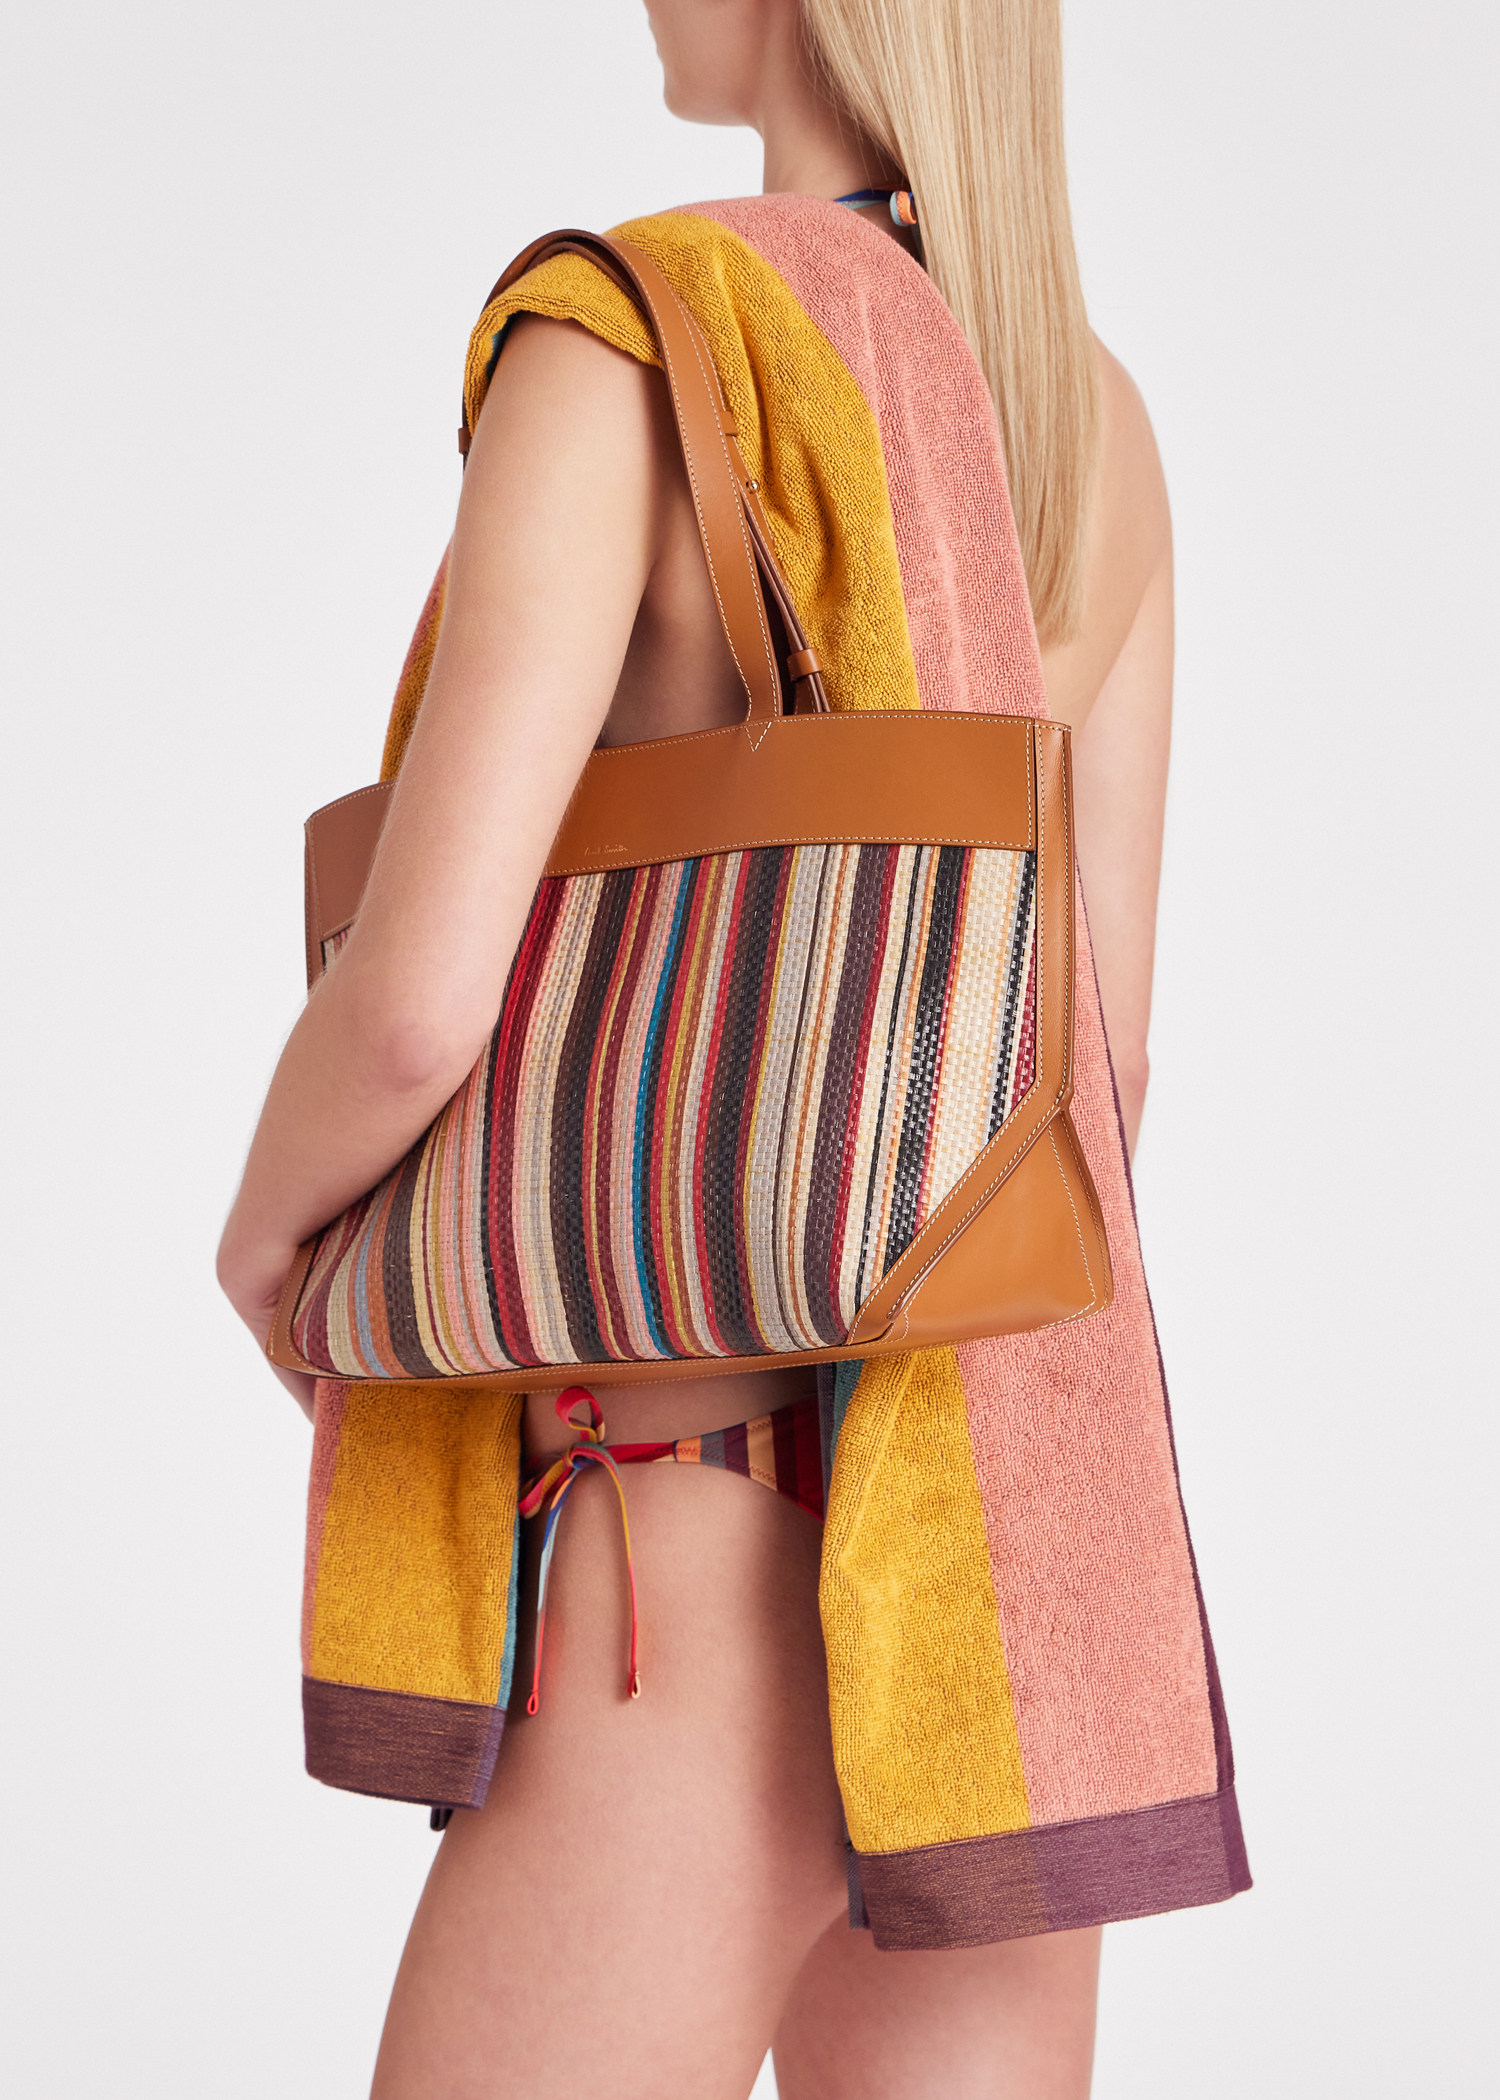 Designer Bags for Women | Paul Smith